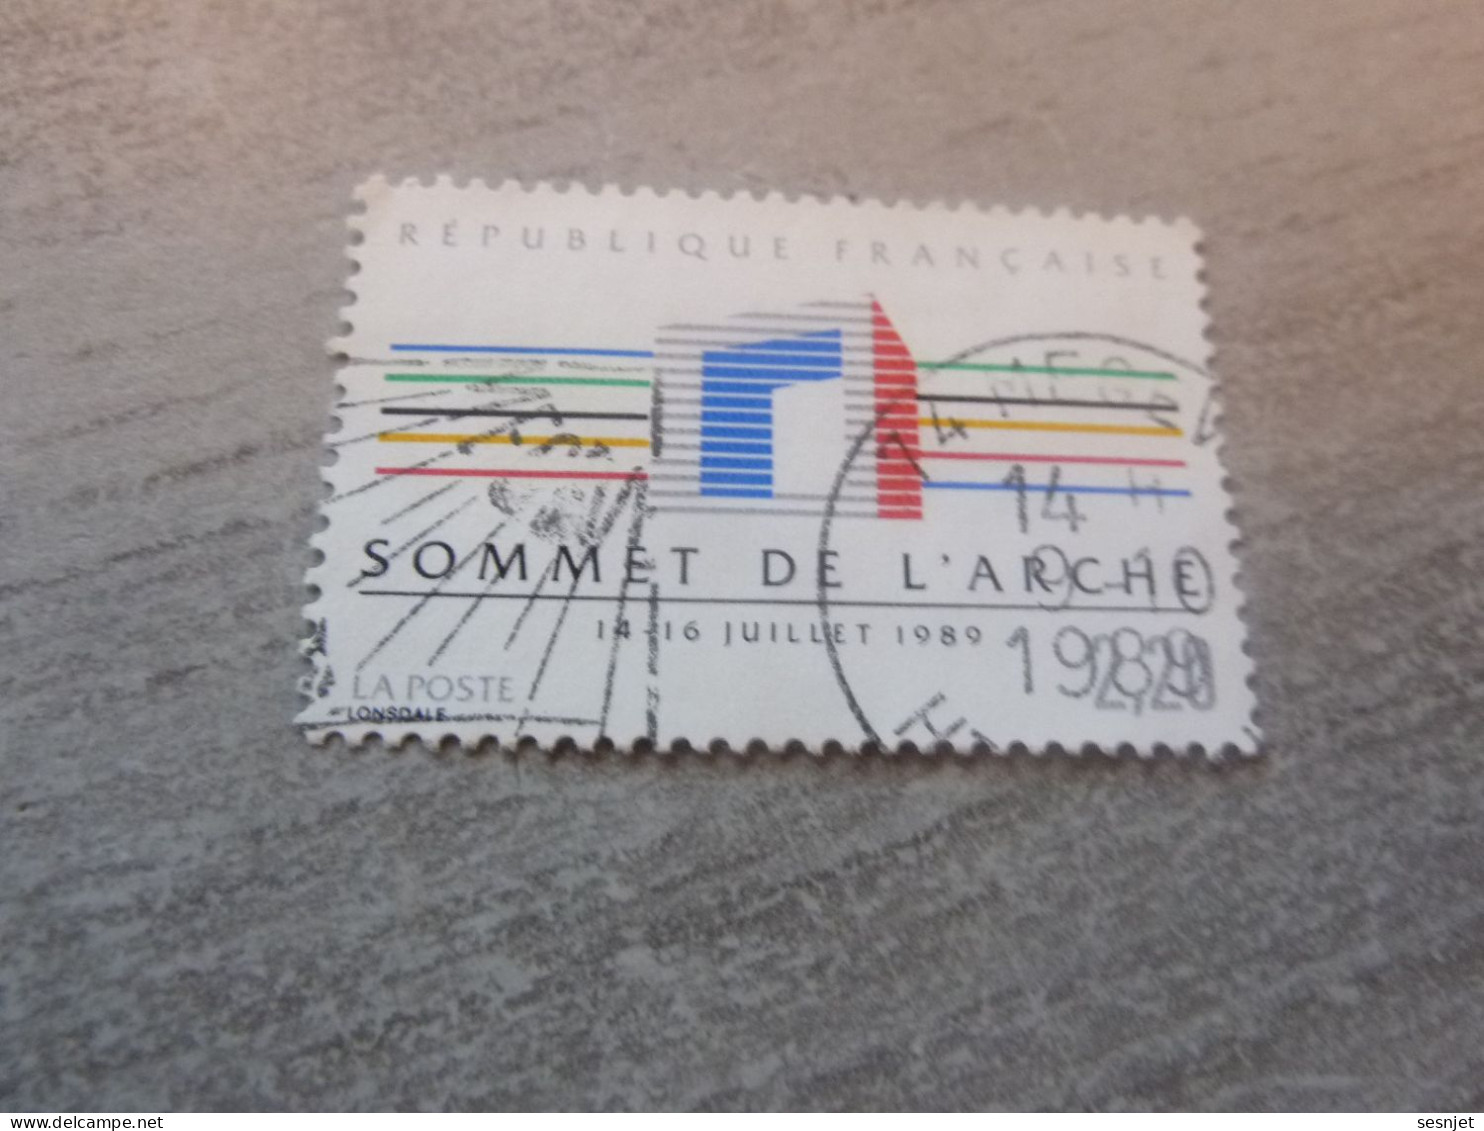 Paris - Sommet Des Pays Industrialisés - 2f.20 - Yt 2600 - Multicolore - Oblitéré - Année 1989 - - Used Stamps